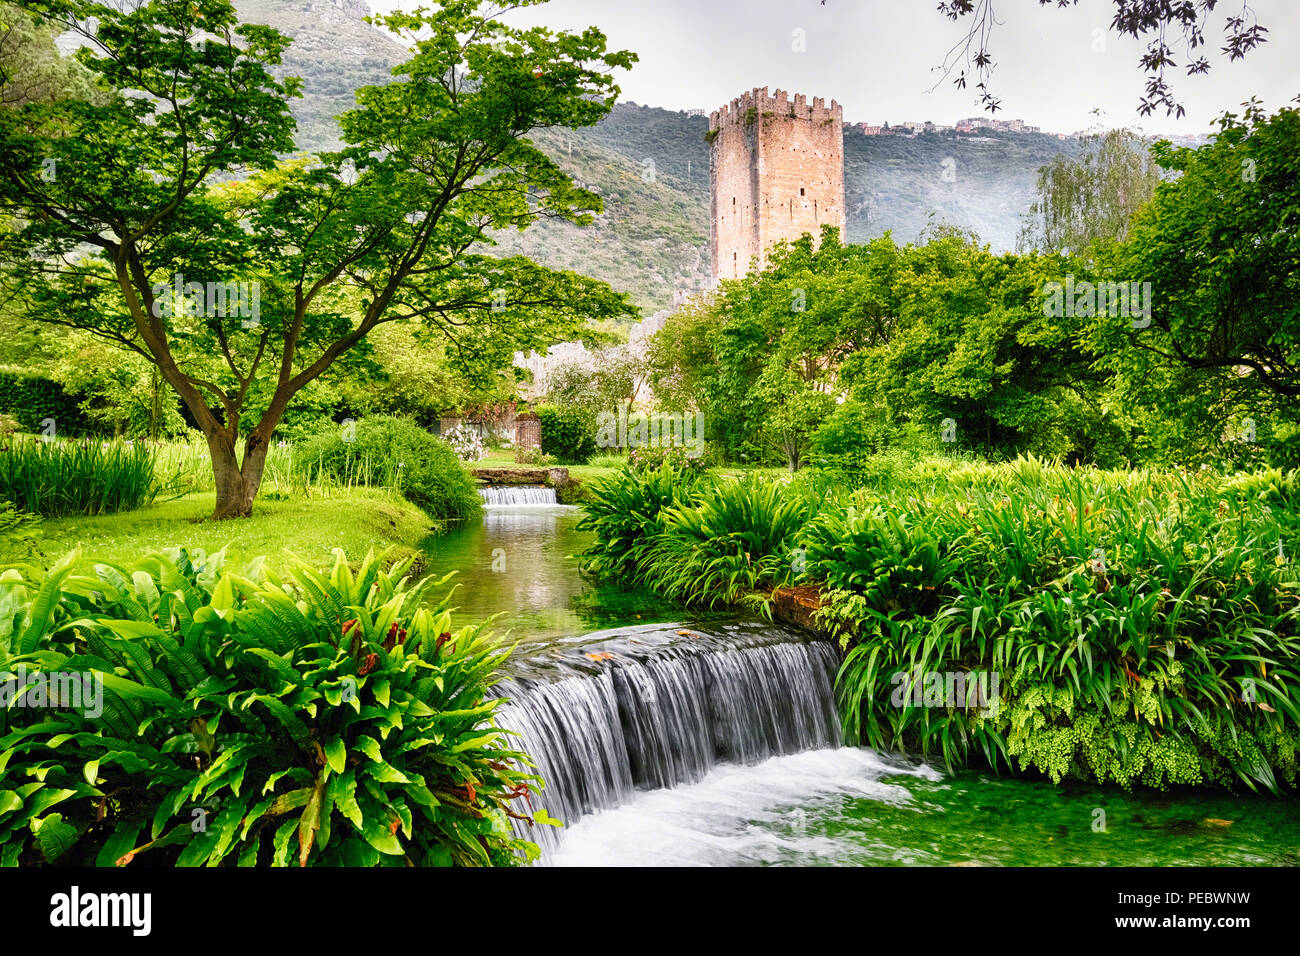 Ruisseau en cascade dans un jardin doté d'une tour médiévale, Latina Italie Banque D'Images